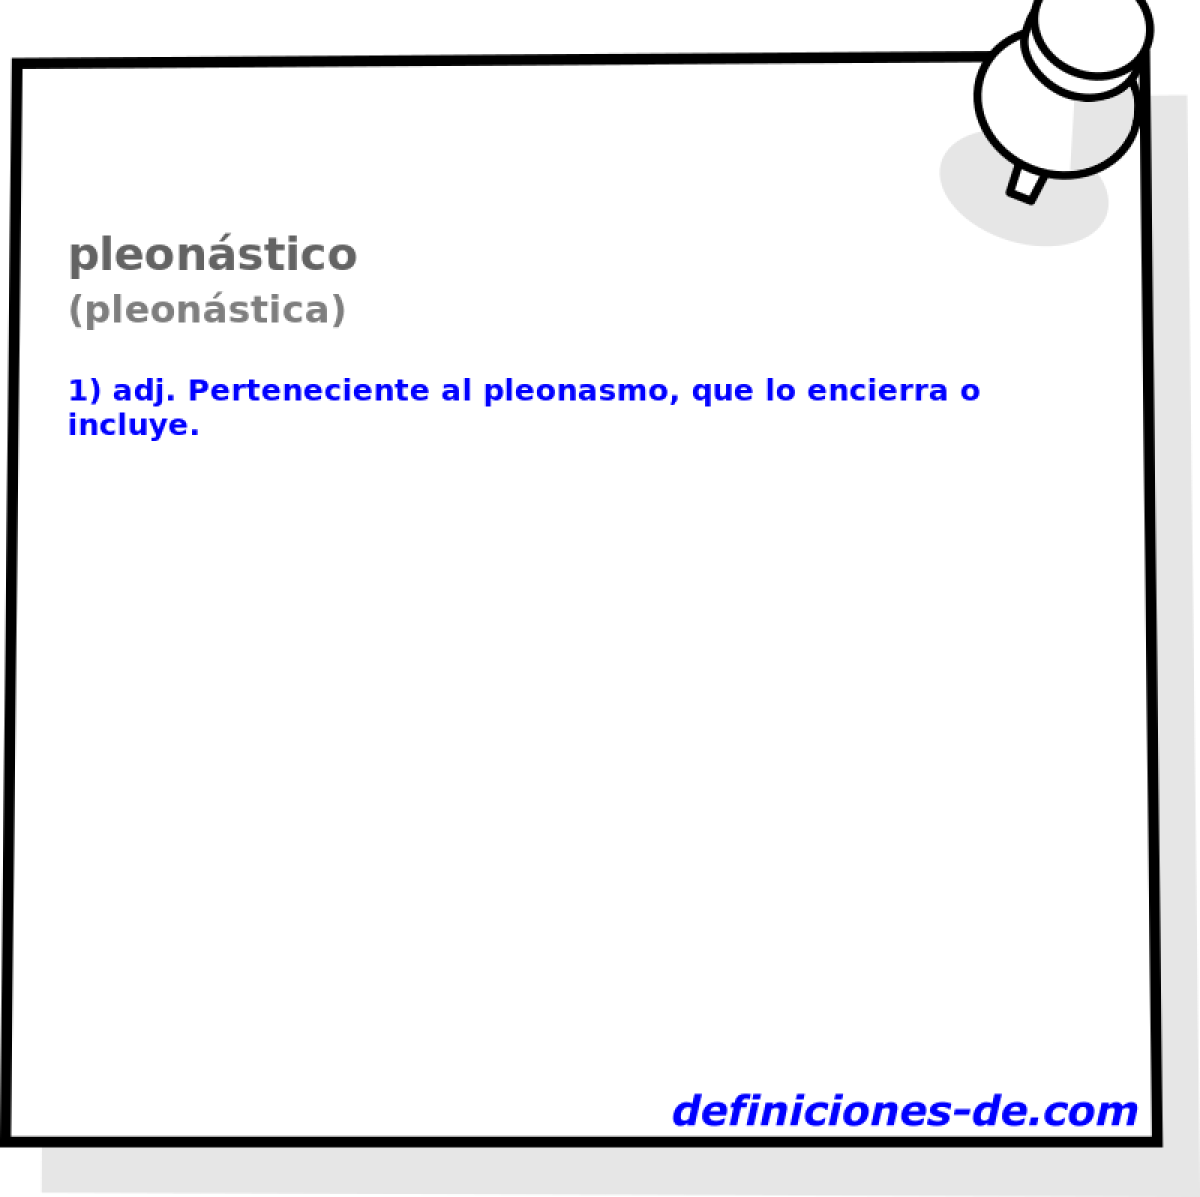 pleonstico (pleonstica)